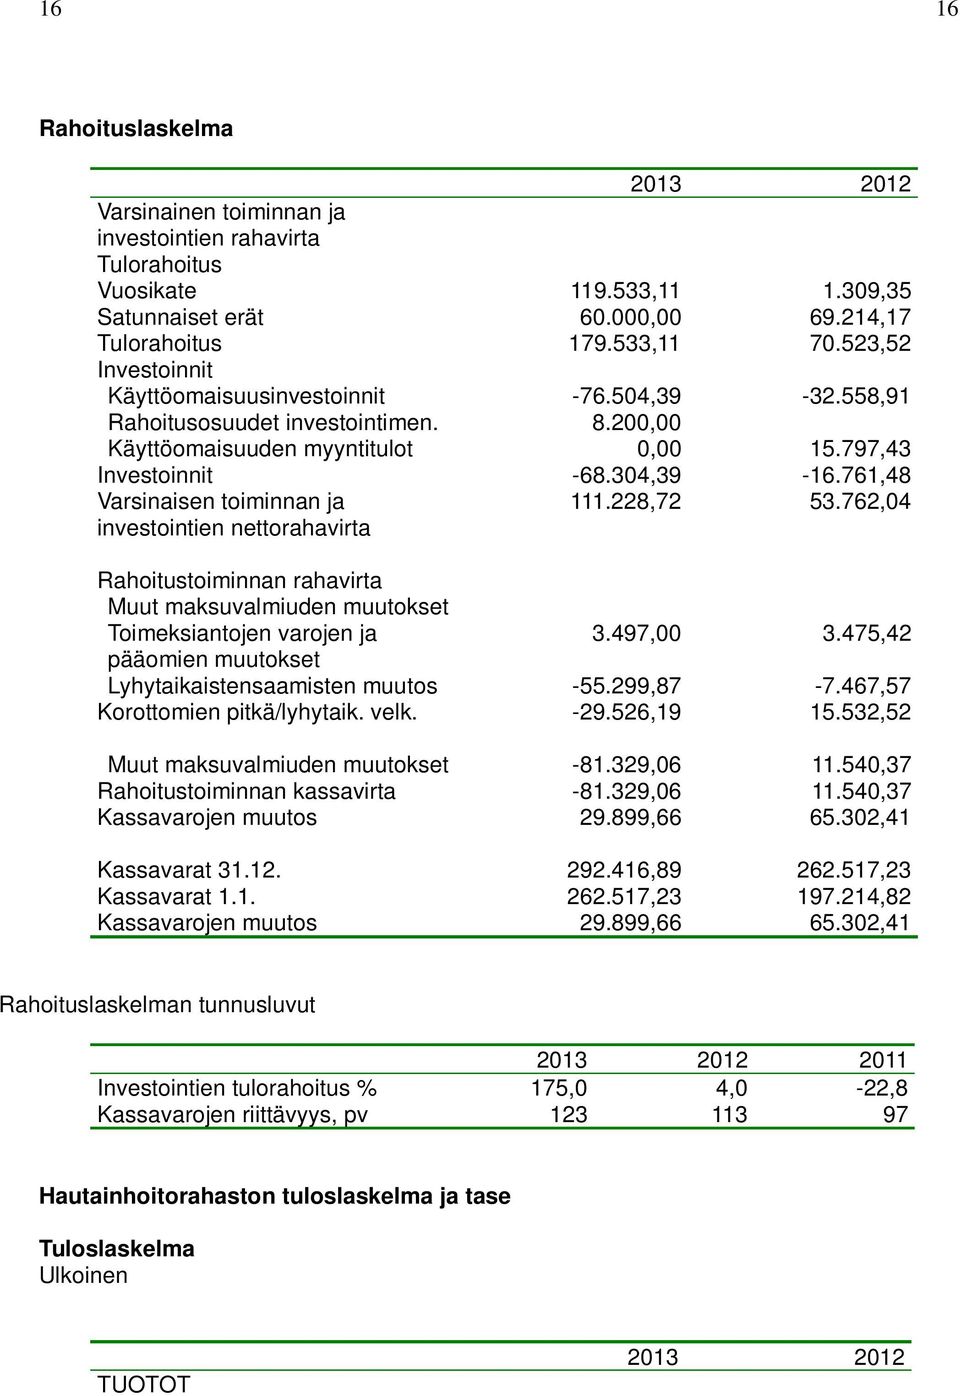 761,48 Varsinaisen toiminnan ja investointien nettorahavirta 111.228,72 53.762,04 Rahoitustoiminnan rahavirta Muut maksuvalmiuden muutokset Toimeksiantojen varojen ja 3.497,00 3.